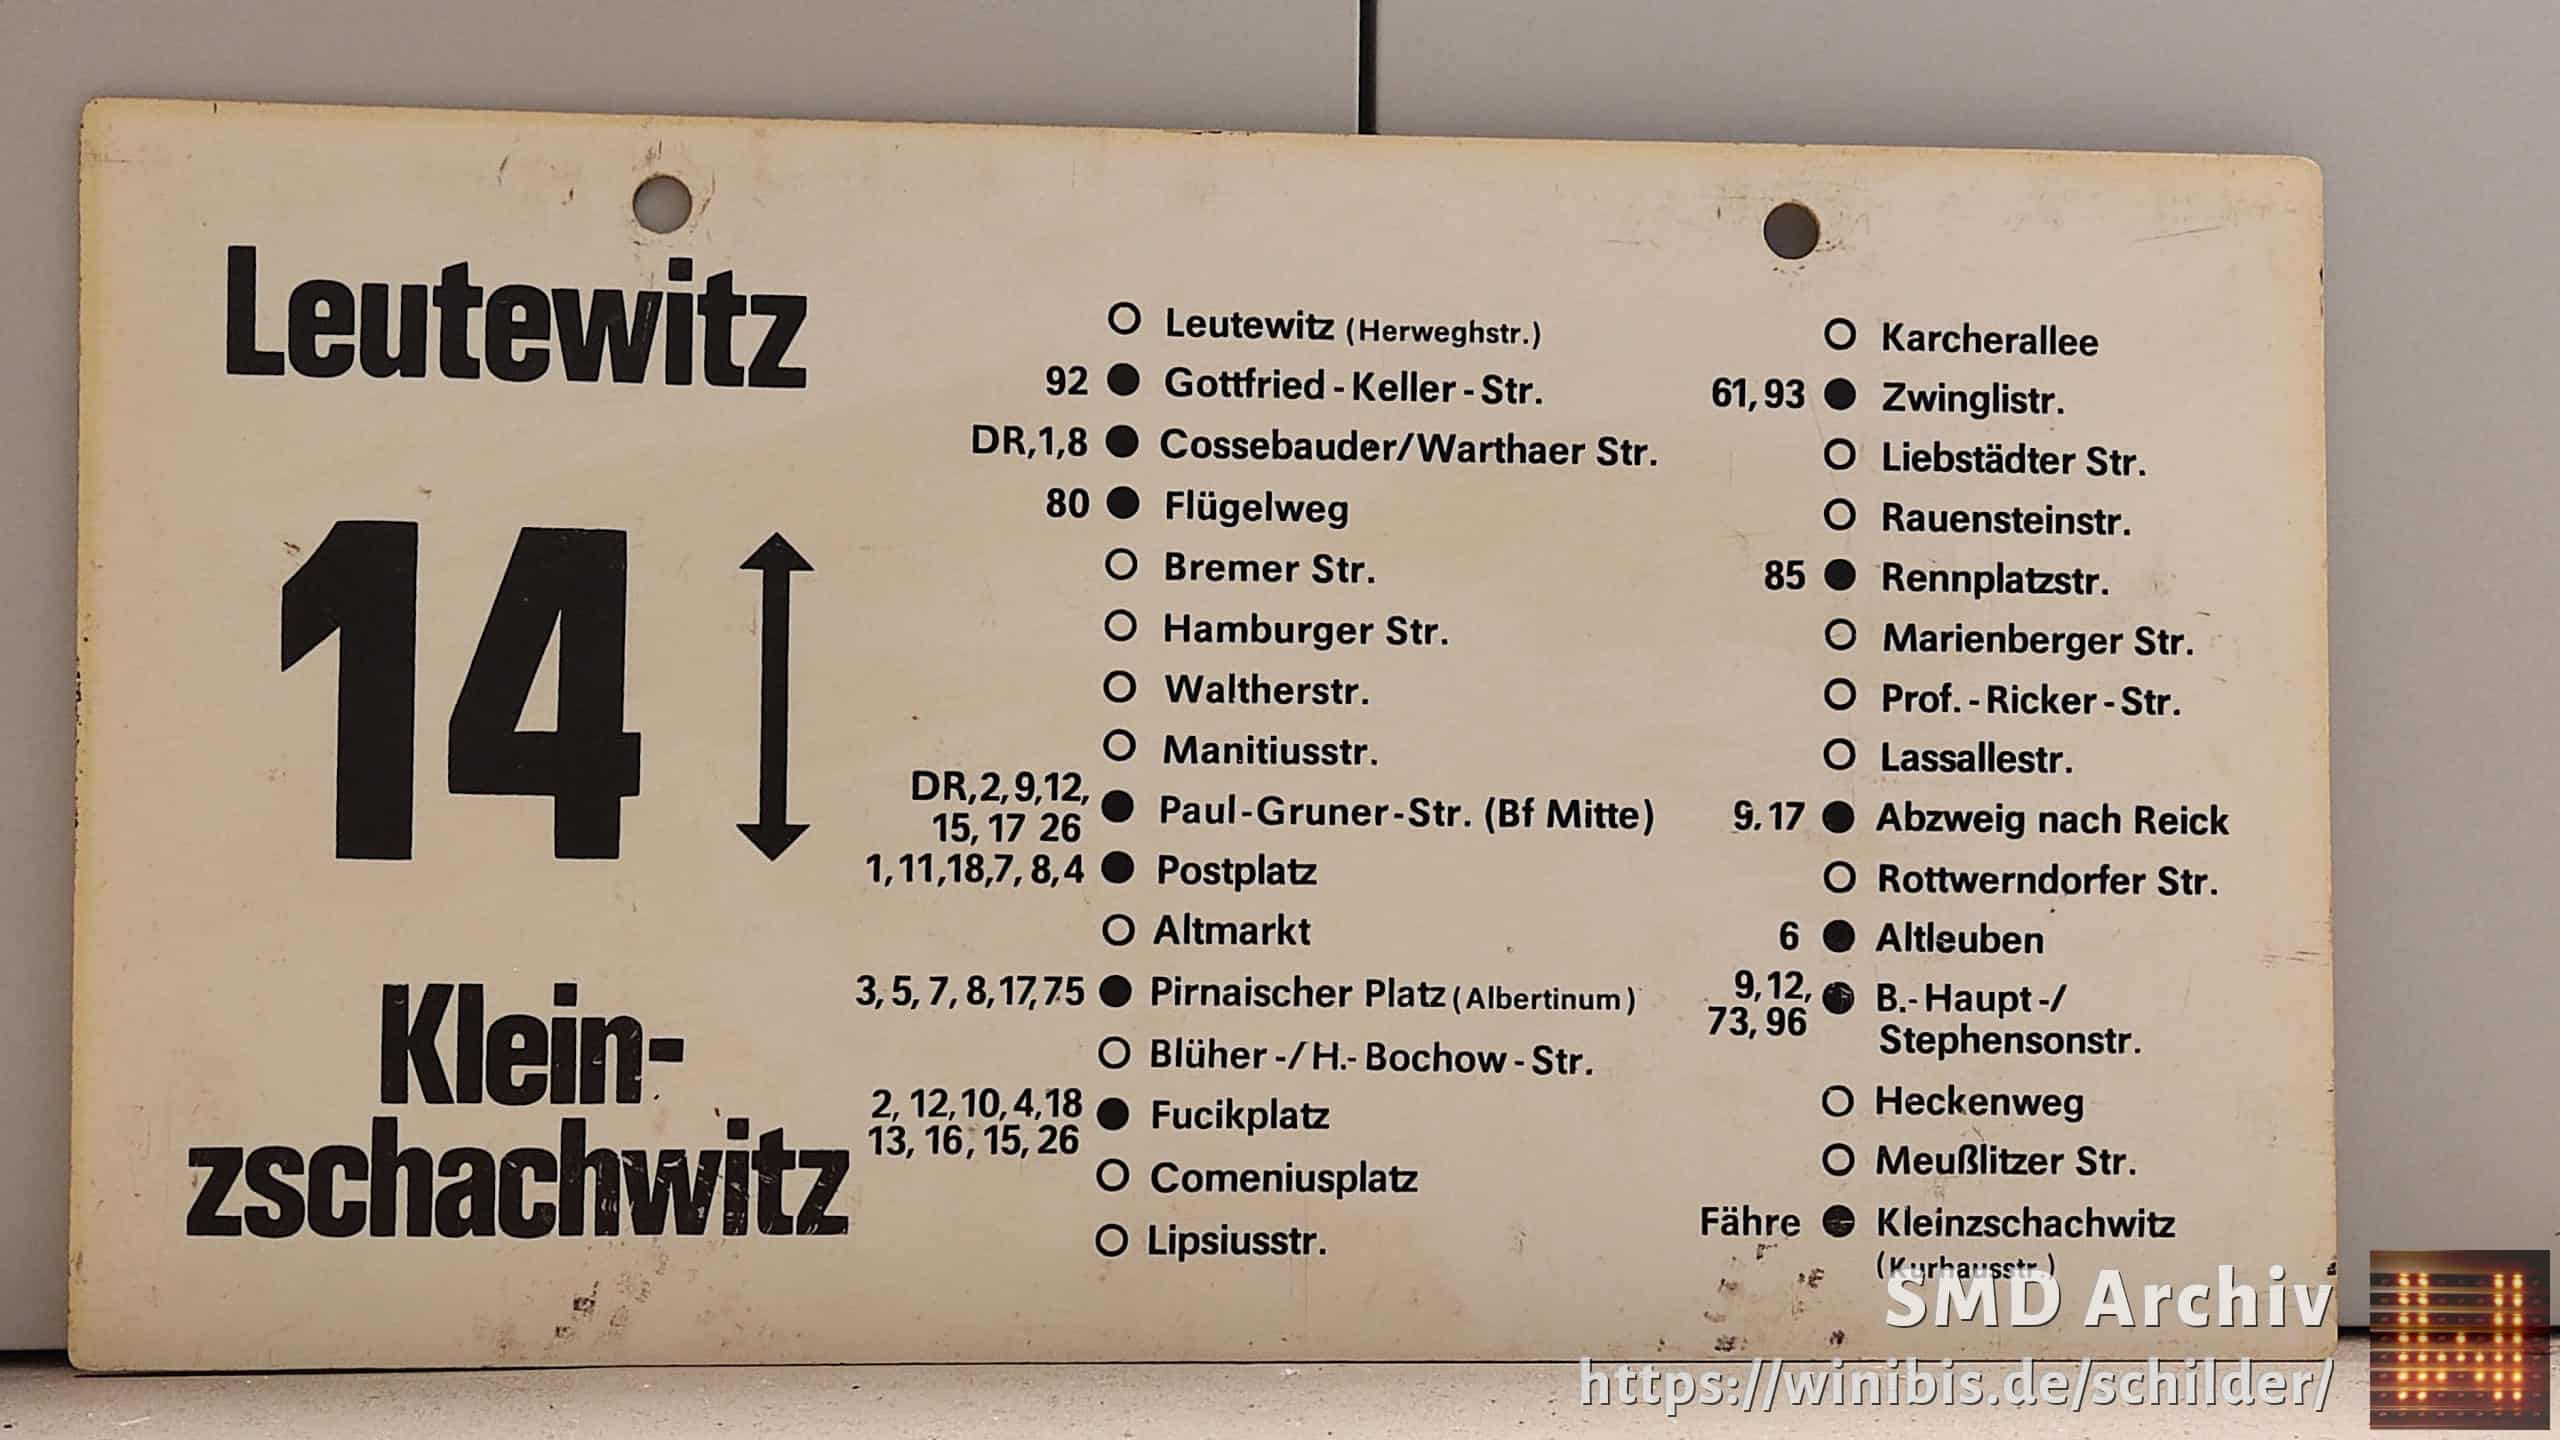 Ein seltenes Straßenbahn-Linienschild aus Dresden der Linie 14 von Leutewitz nach Kleinnach zschachwitz #6